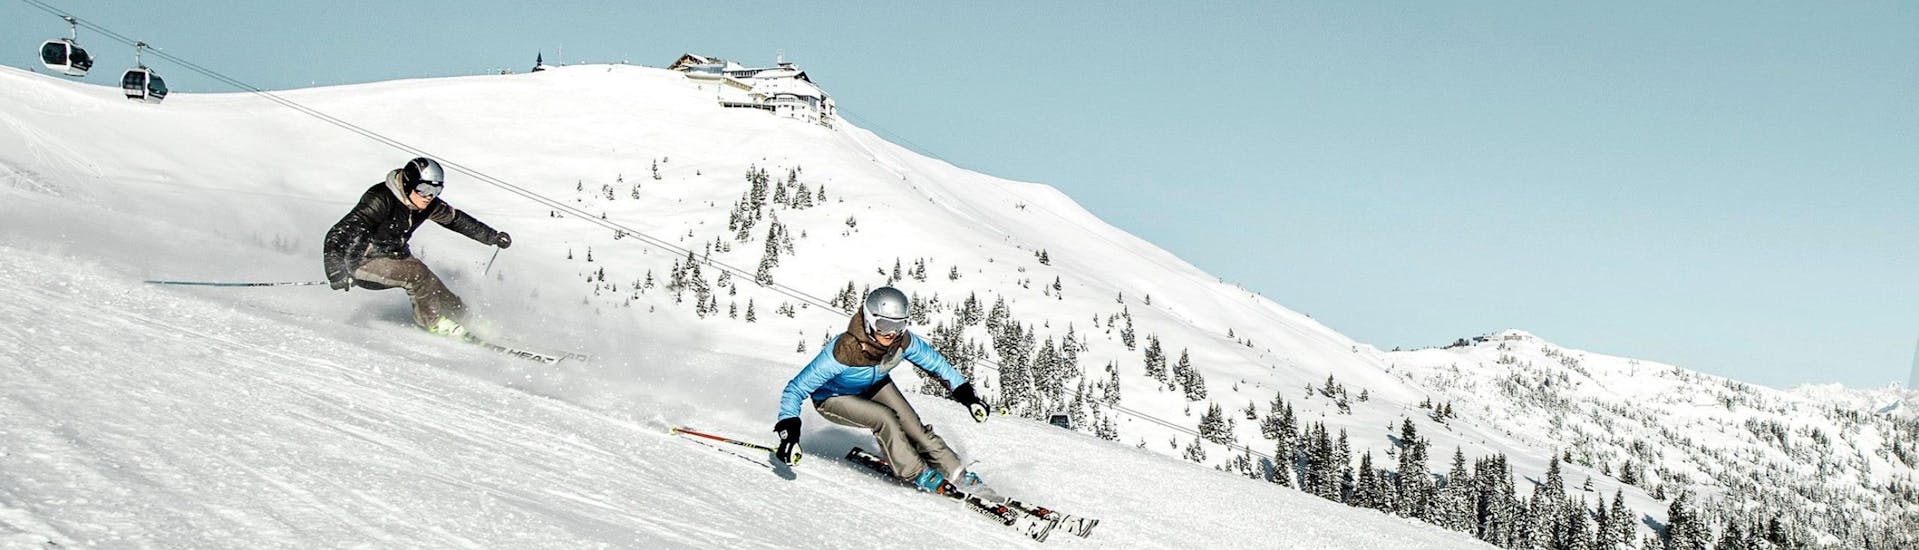 Zwei Skifahrer carven die Skipiste auf der Schmittenhöhe in Zell am See hinunter, wo örtliche Skischulen ihre Skikurse sowohl für Anfänger als auch Fortgeschrittene anbieten.